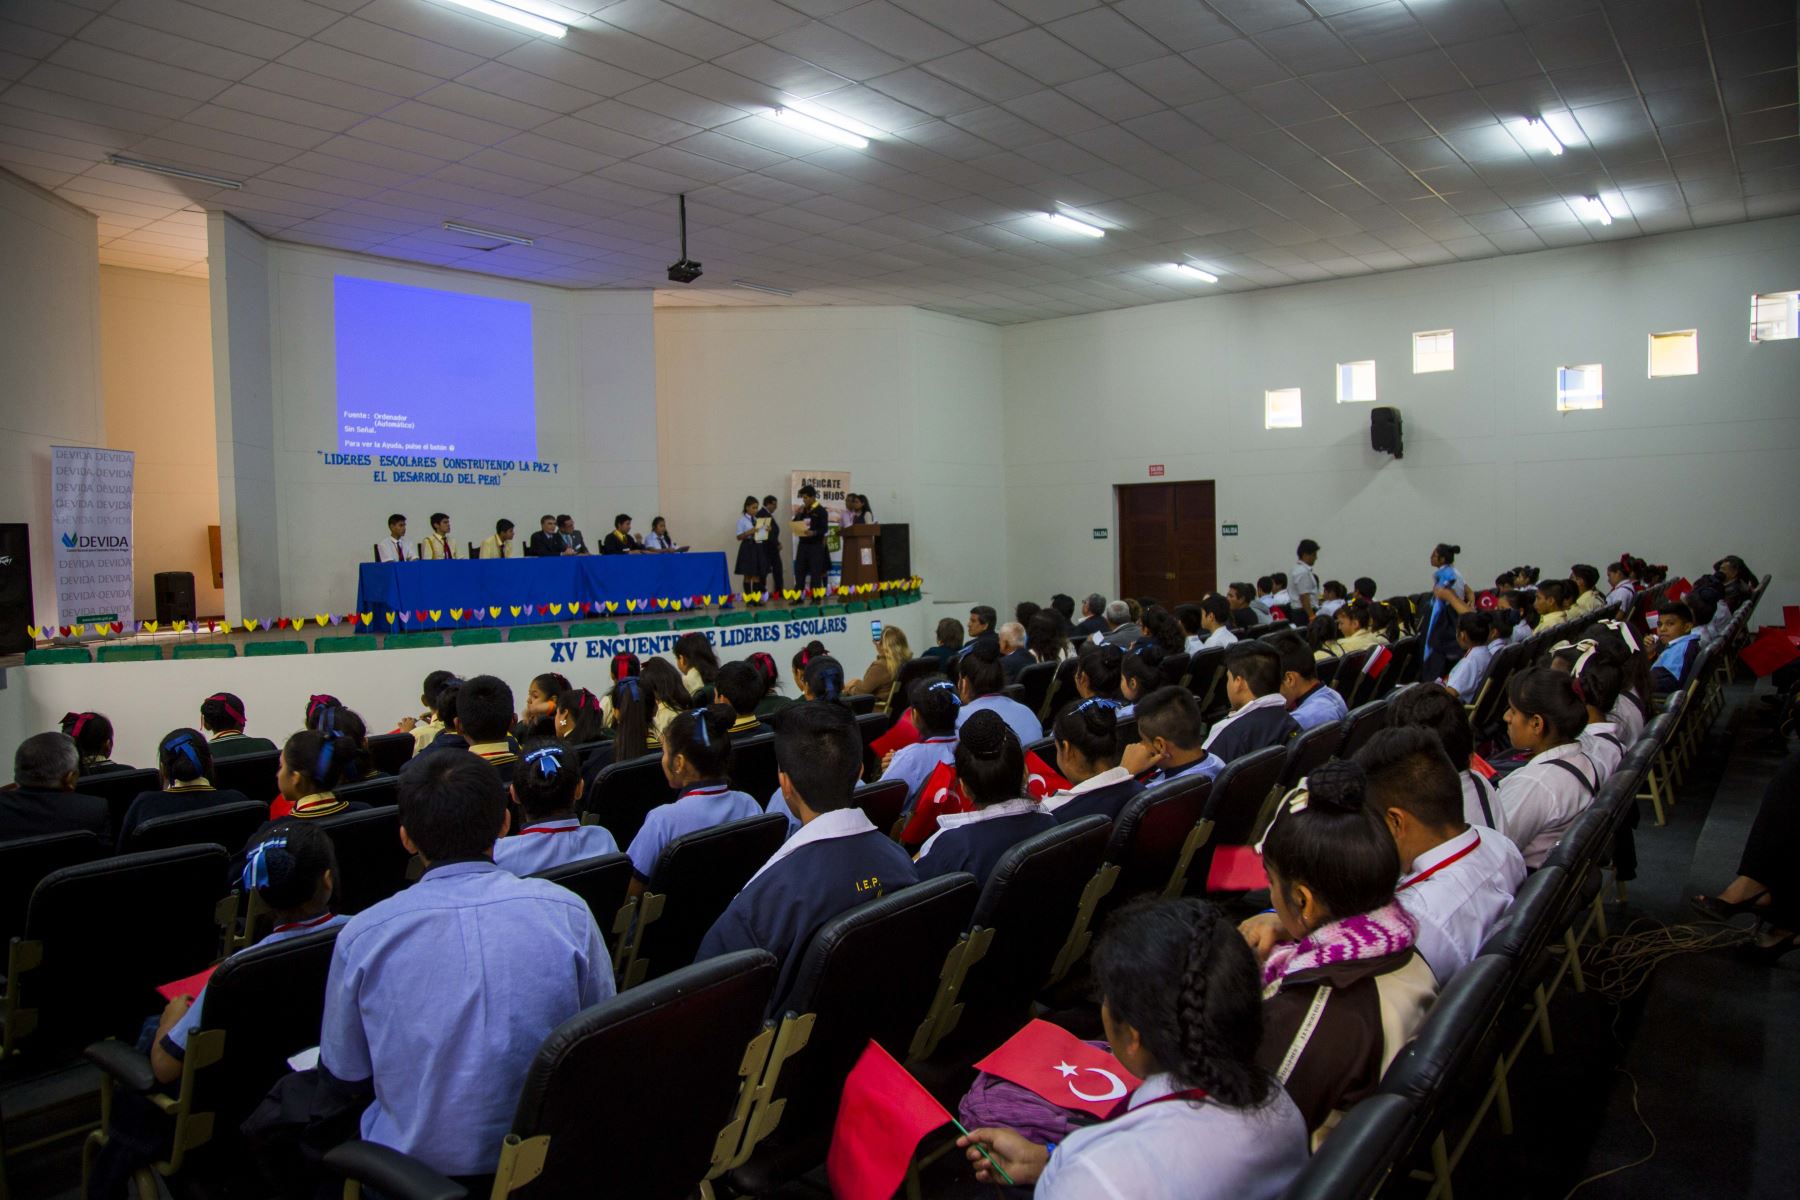 Nobel de Química 2015, Azis Sancar, se reunió con escolares de El Porvenir. ANDINA/Luis Puell